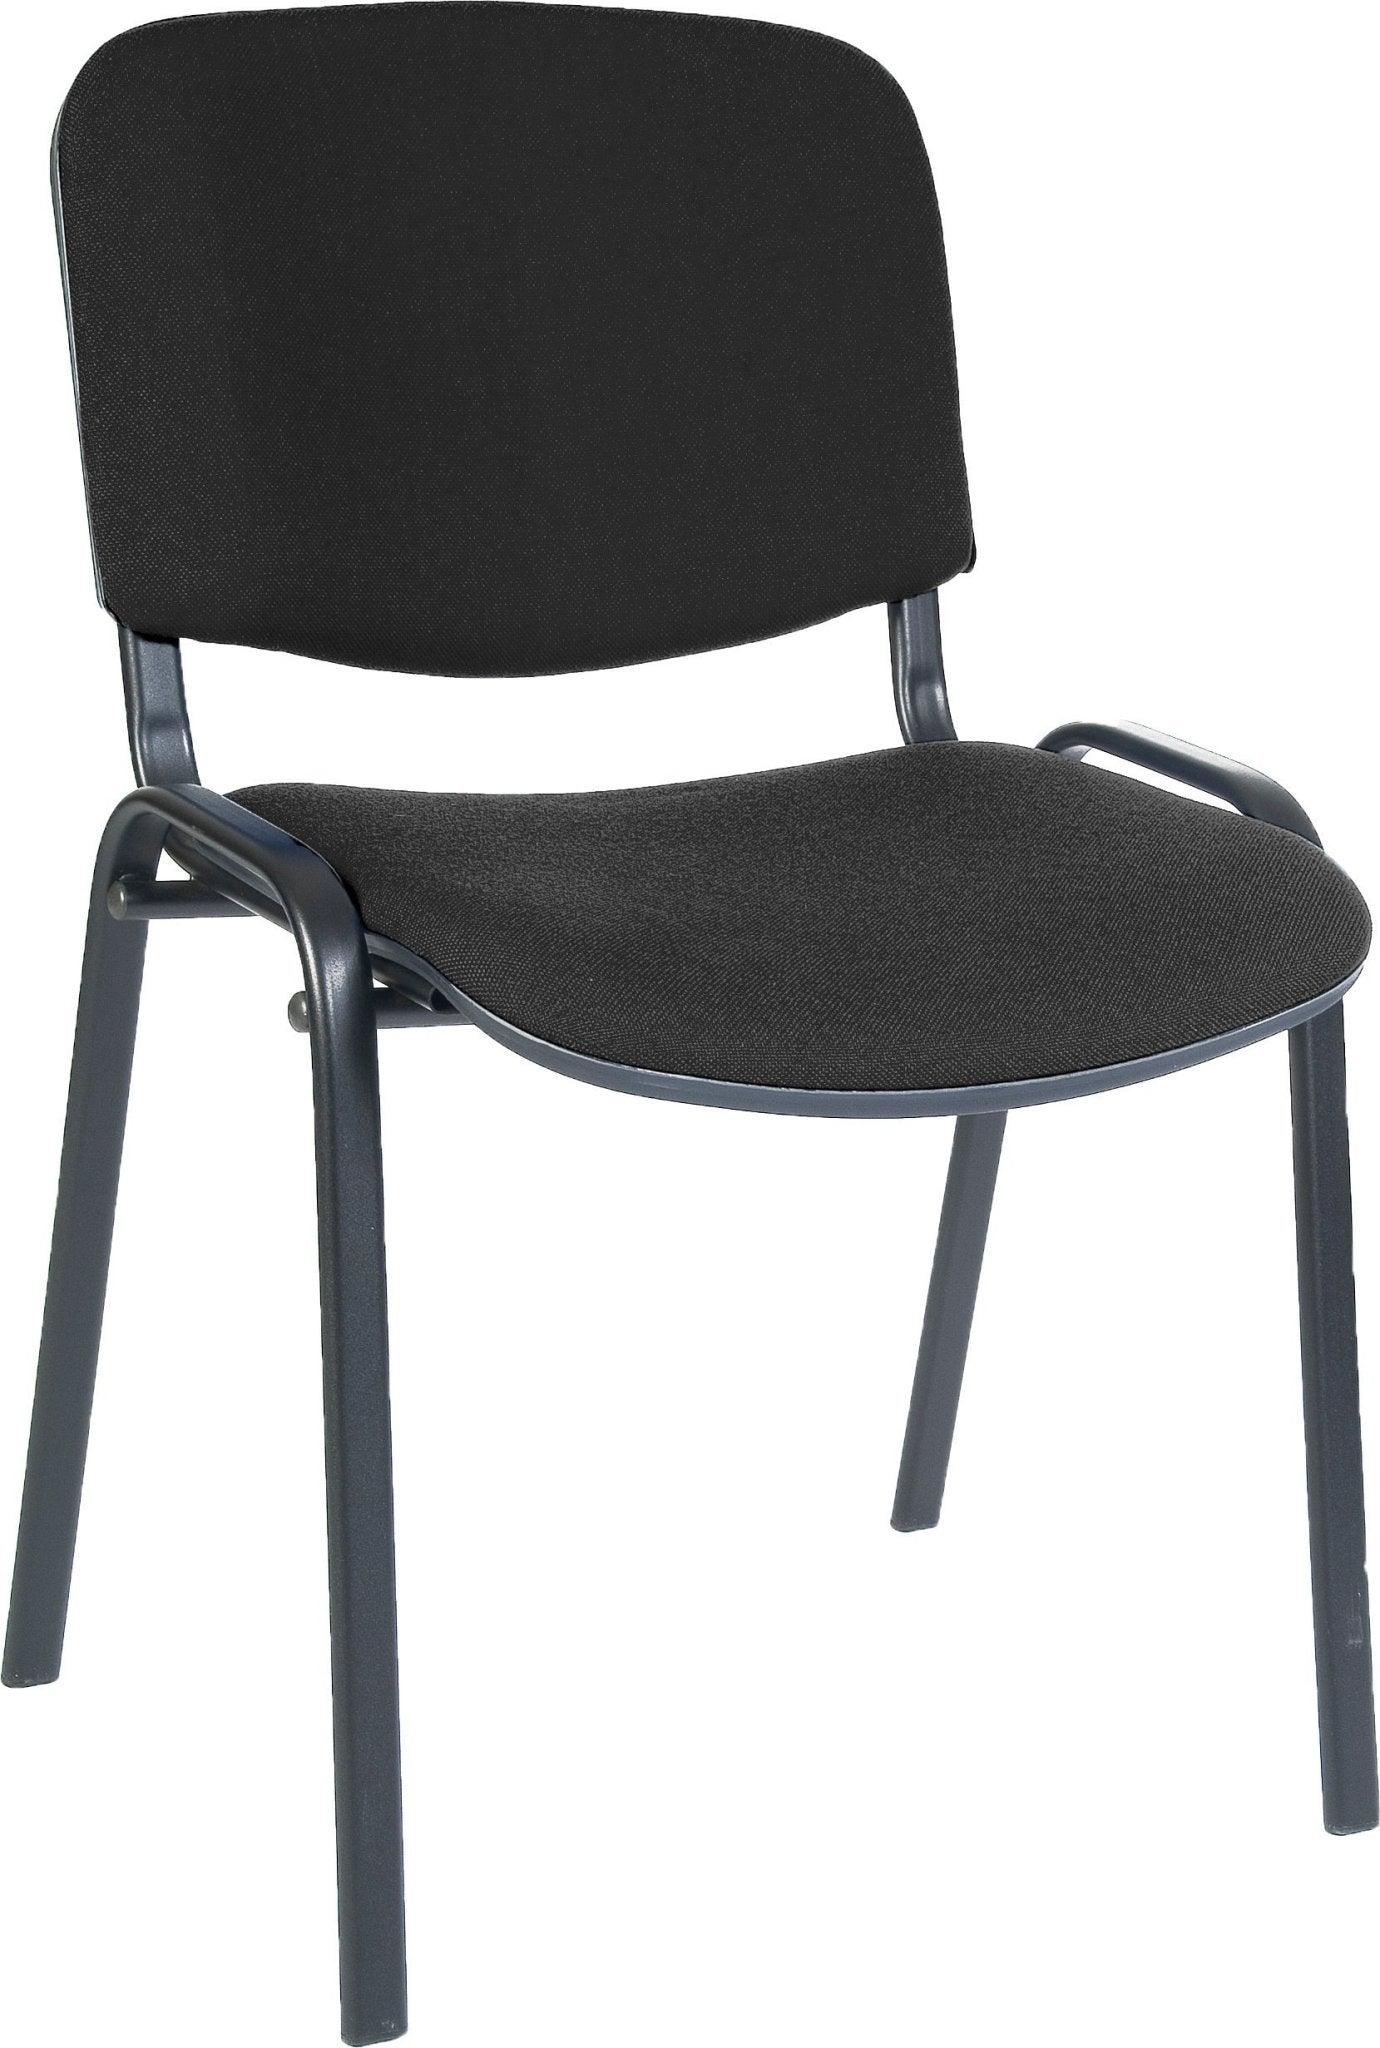 Conference room chair (black) - crimblefest furniture - image 1